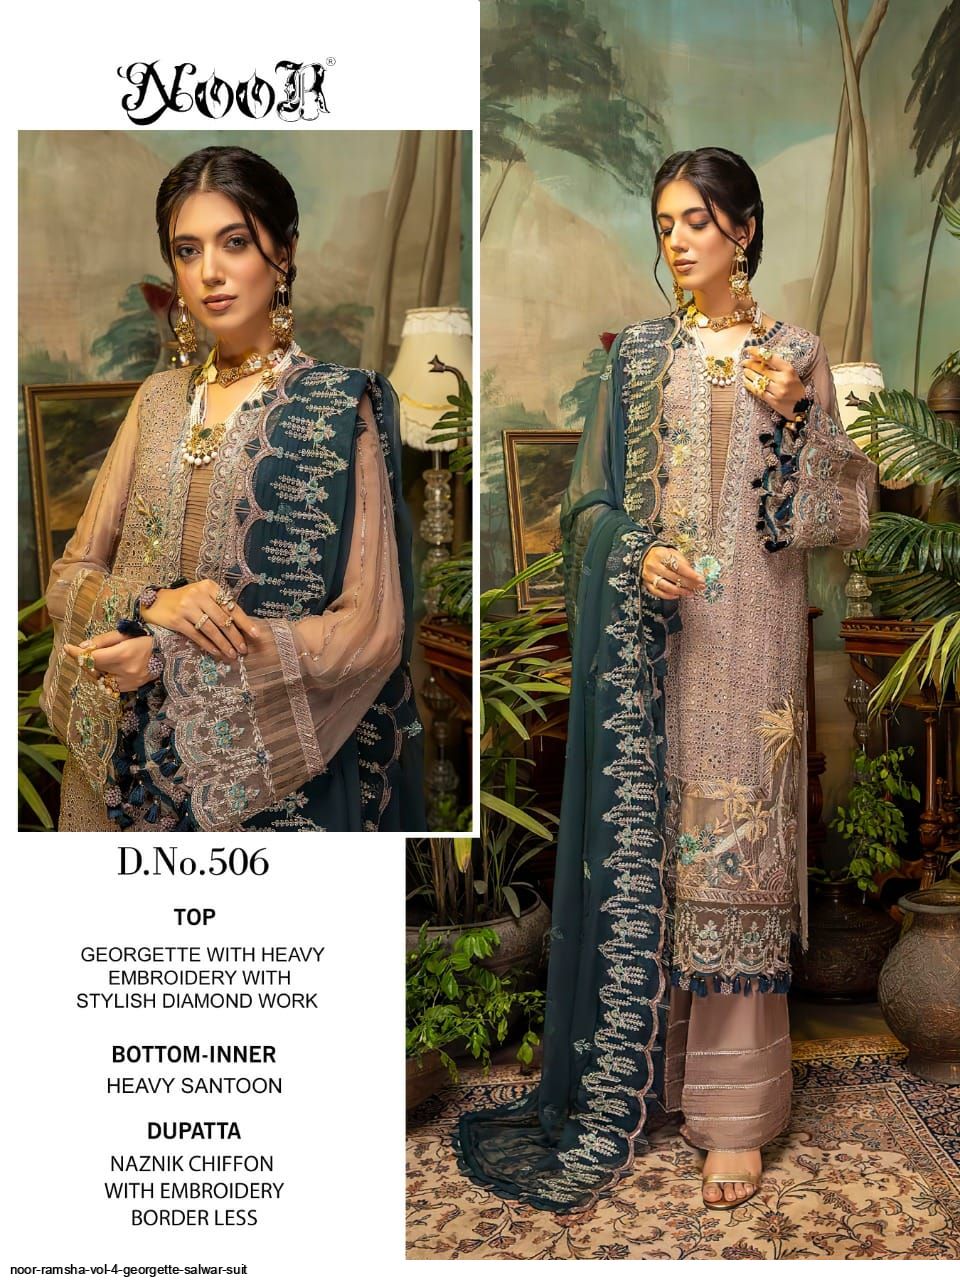 Noor Presents Ramsha Vol 4 Georgette Salwar Suit Wholesale Rate In Surat - Sai Dresses